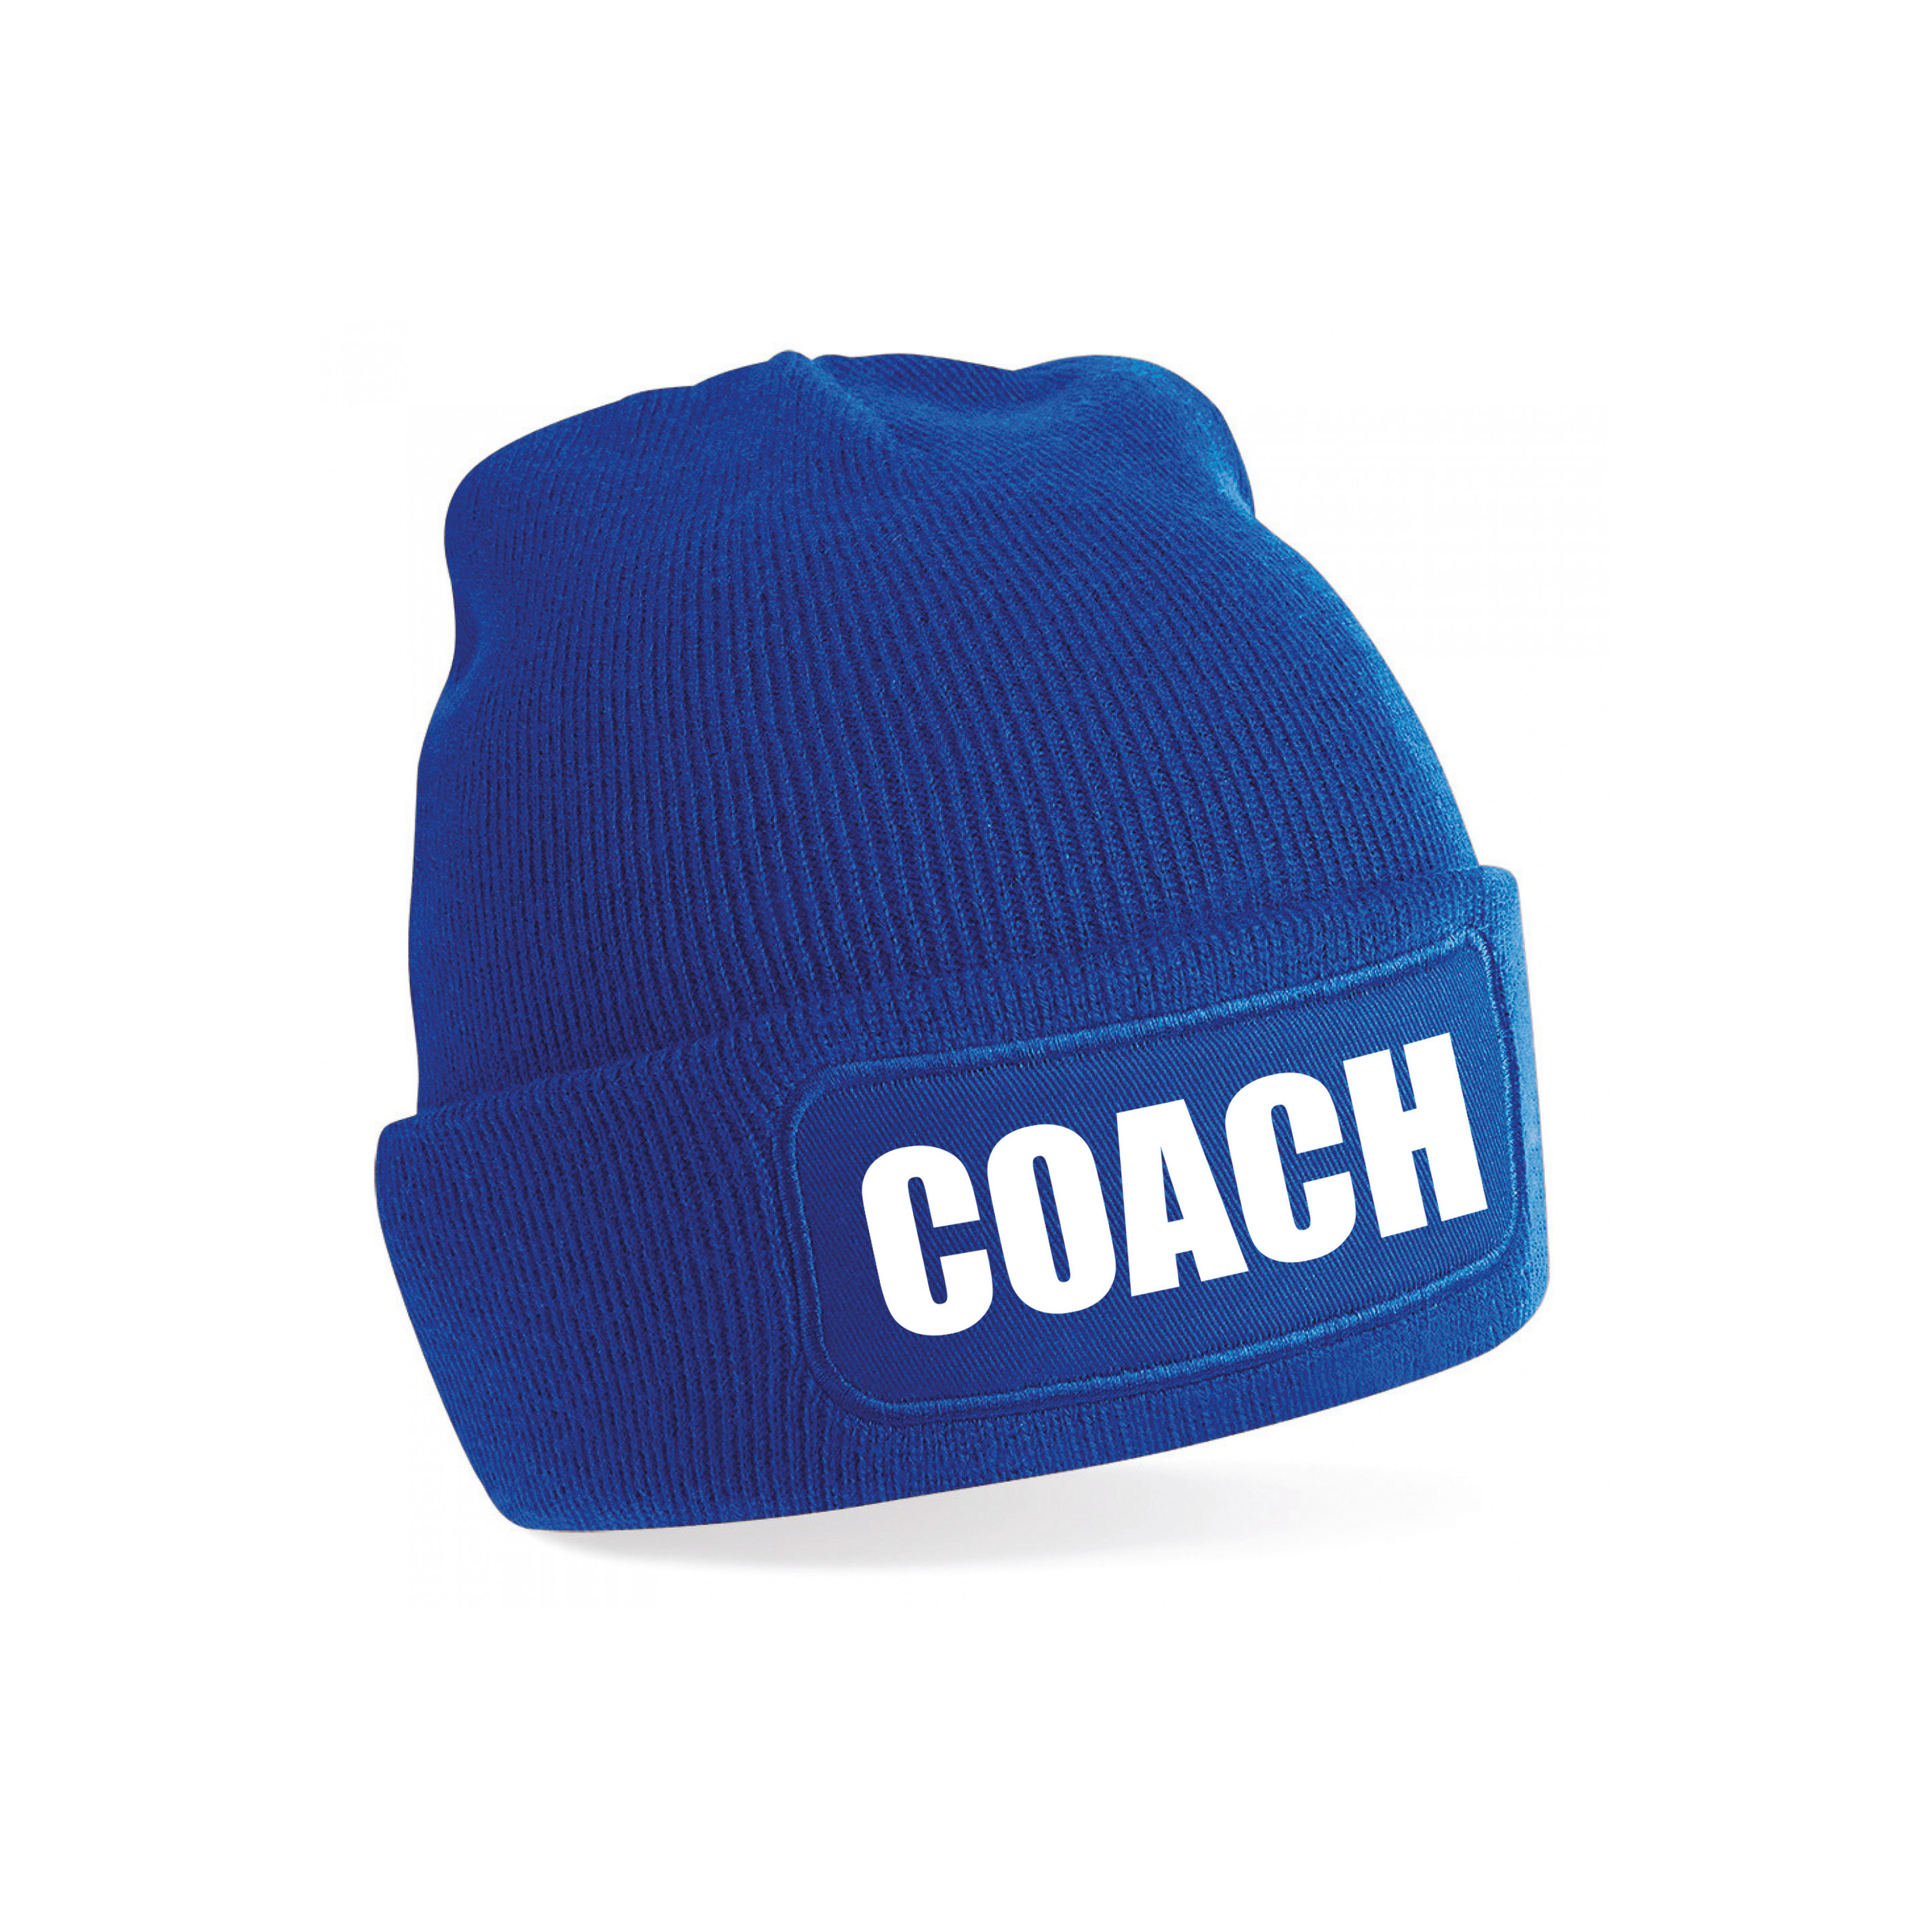 Coach muts voor volwassenen blauw trainer-coach wintermuts beanie one size unisex